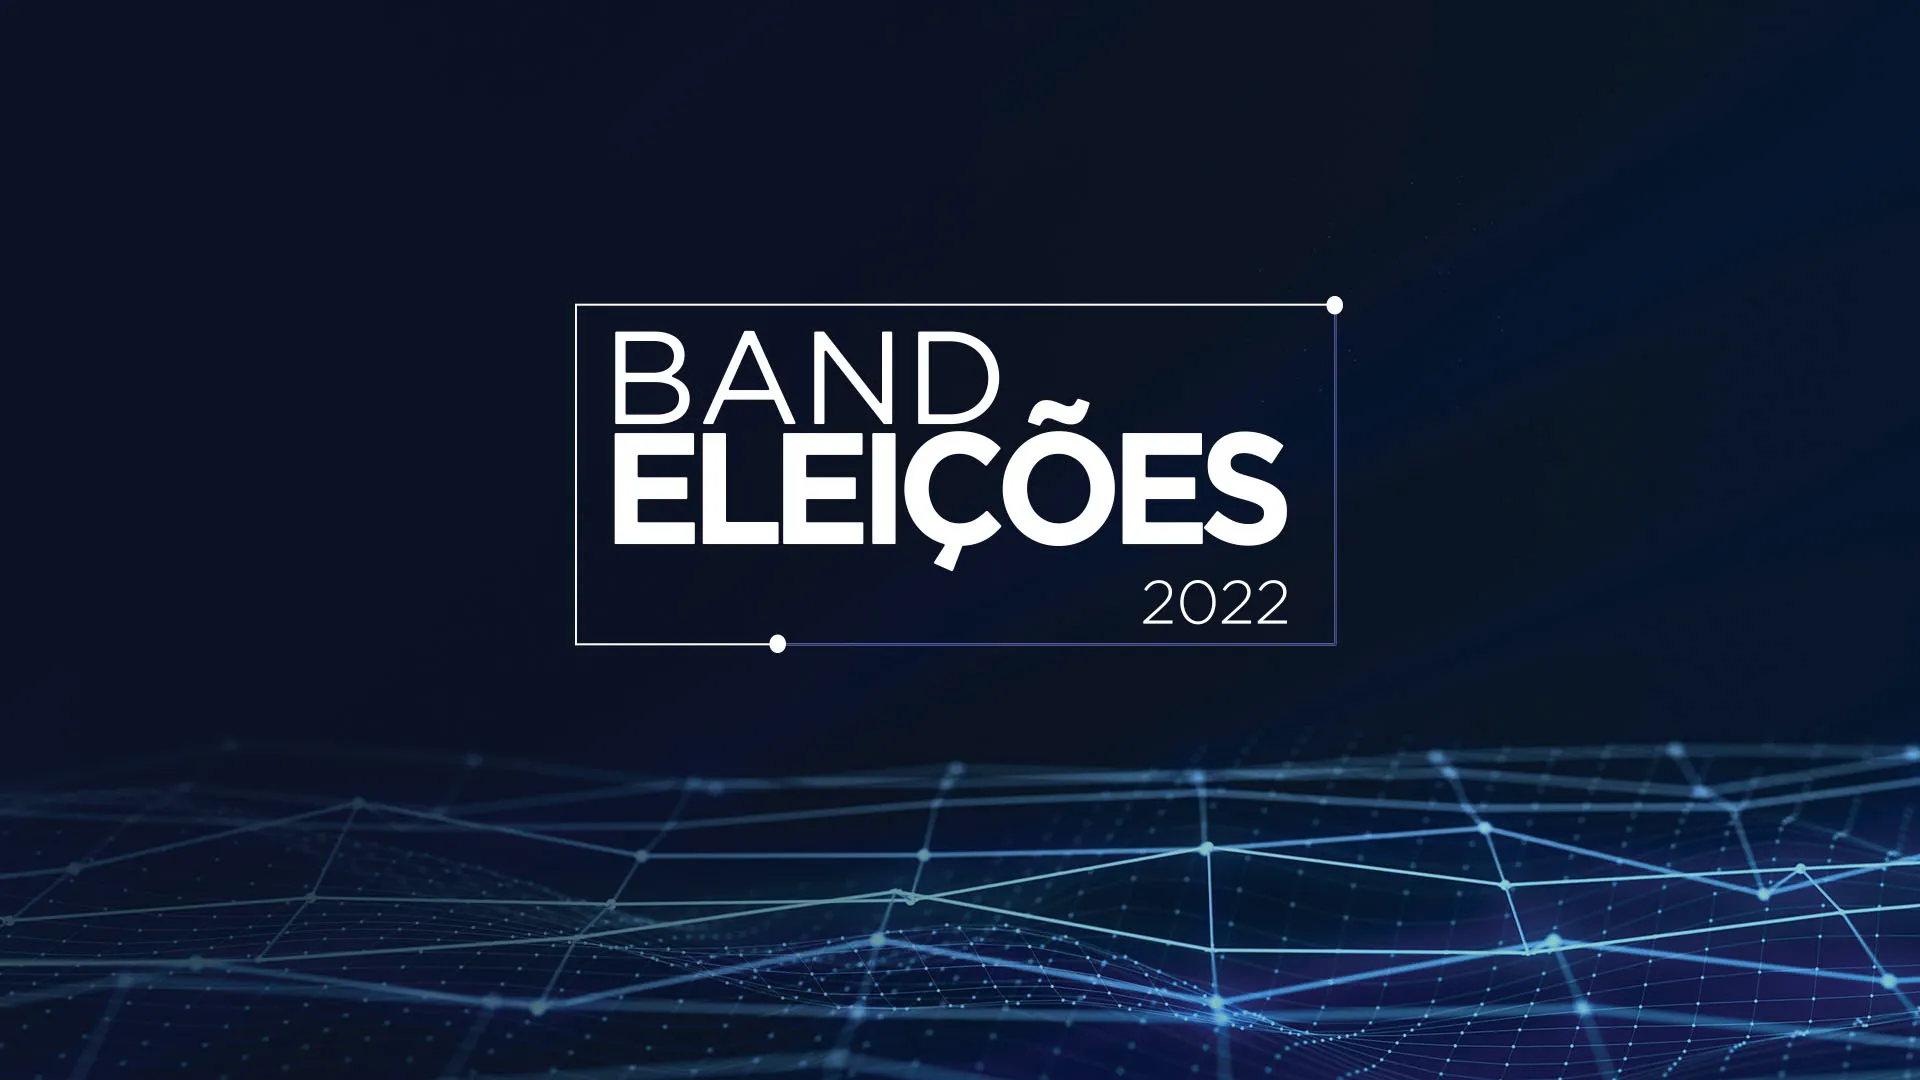 Segundo dia de campanha oficial para os candidatos nas eleições de 2022